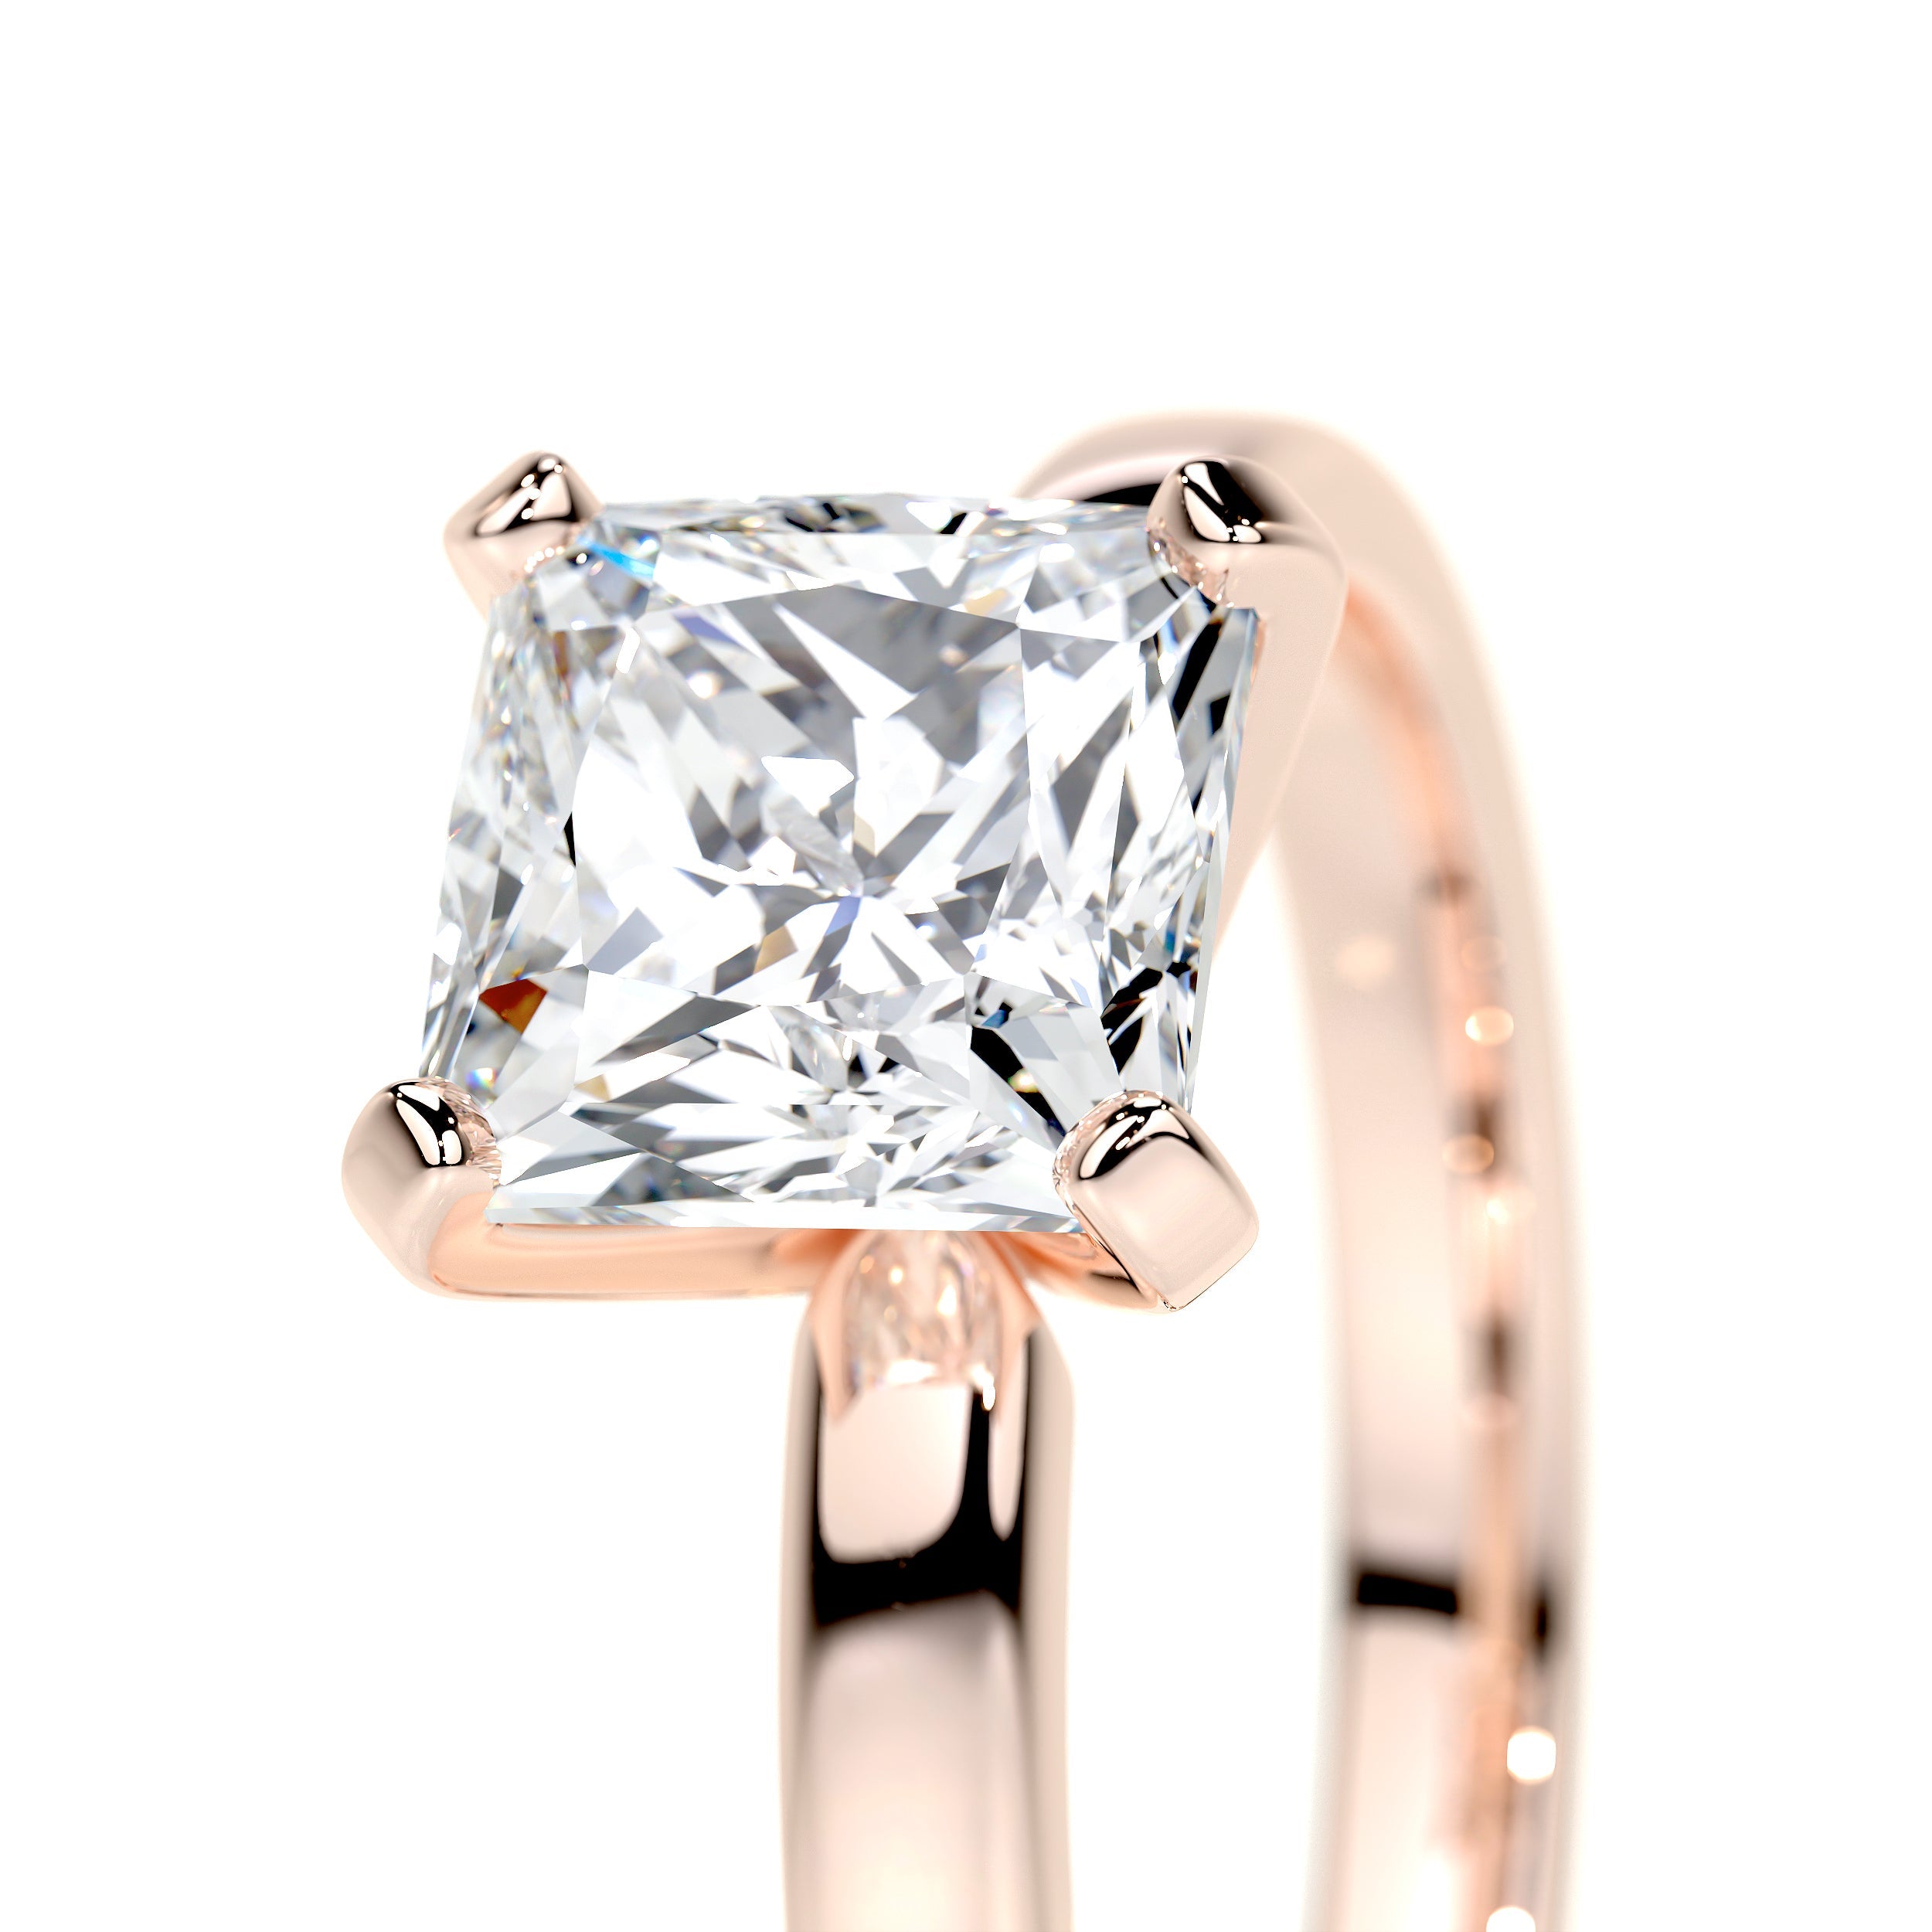 Isabelle Lab Grown Diamond Ring   (1.5 Carat) -14K Rose Gold